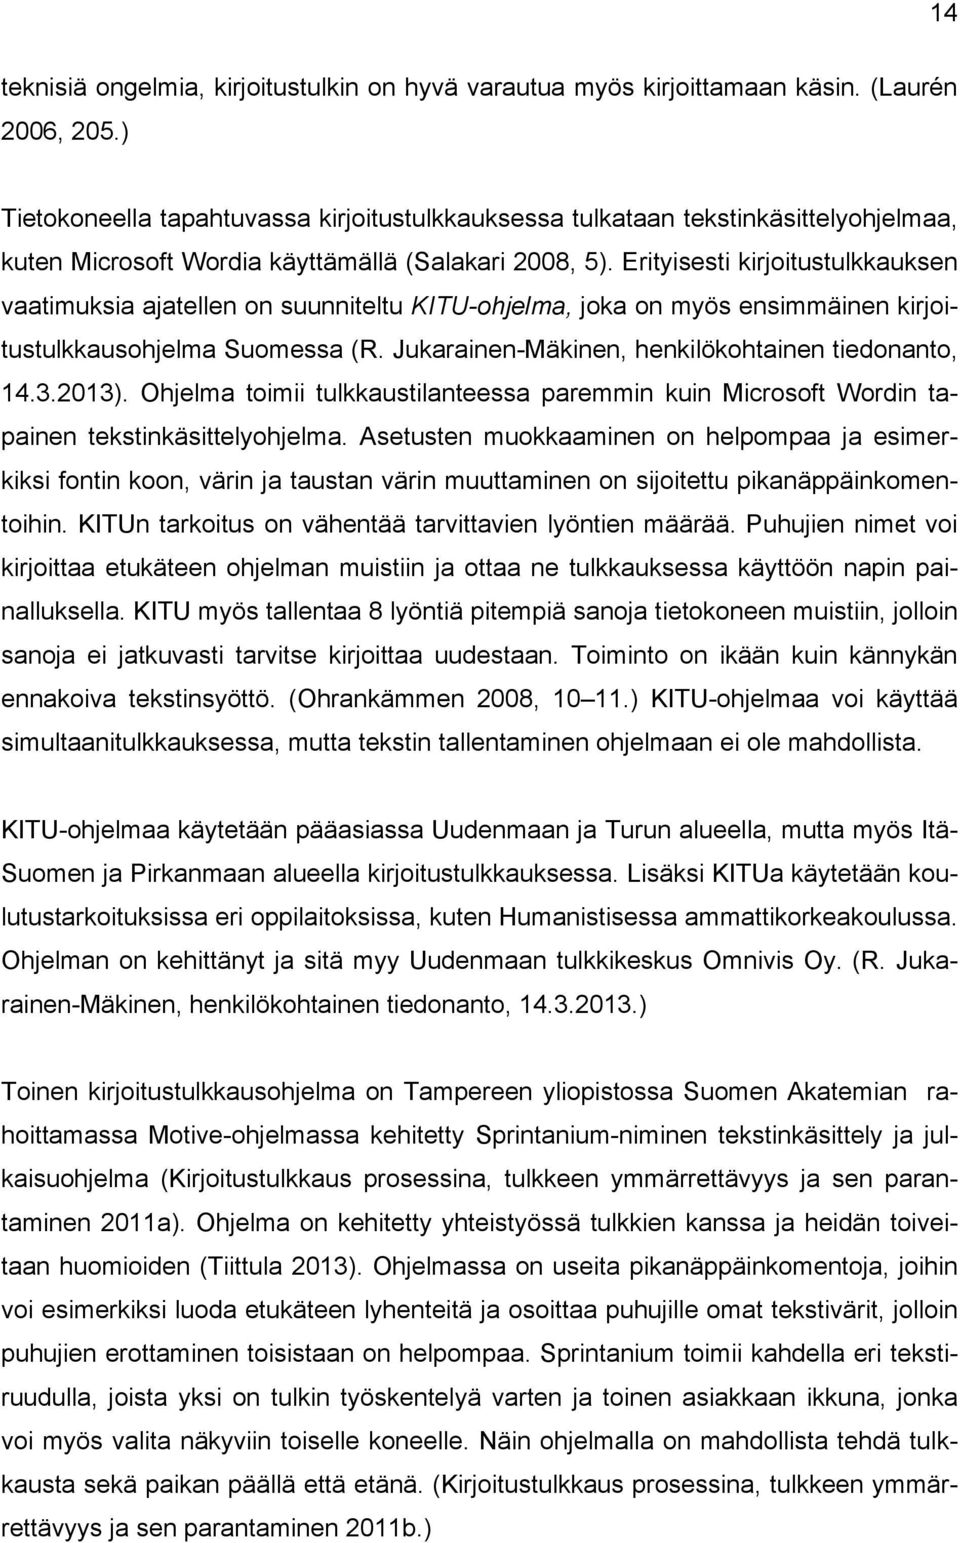 Erityisesti kirjoitustulkkauksen vaatimuksia ajatellen on suunniteltu KITU-ohjelma, joka on myös ensimmäinen kirjoitustulkkausohjelma Suomessa (R. Jukarainen-Mäkinen, henkilökohtainen tiedonanto, 14.